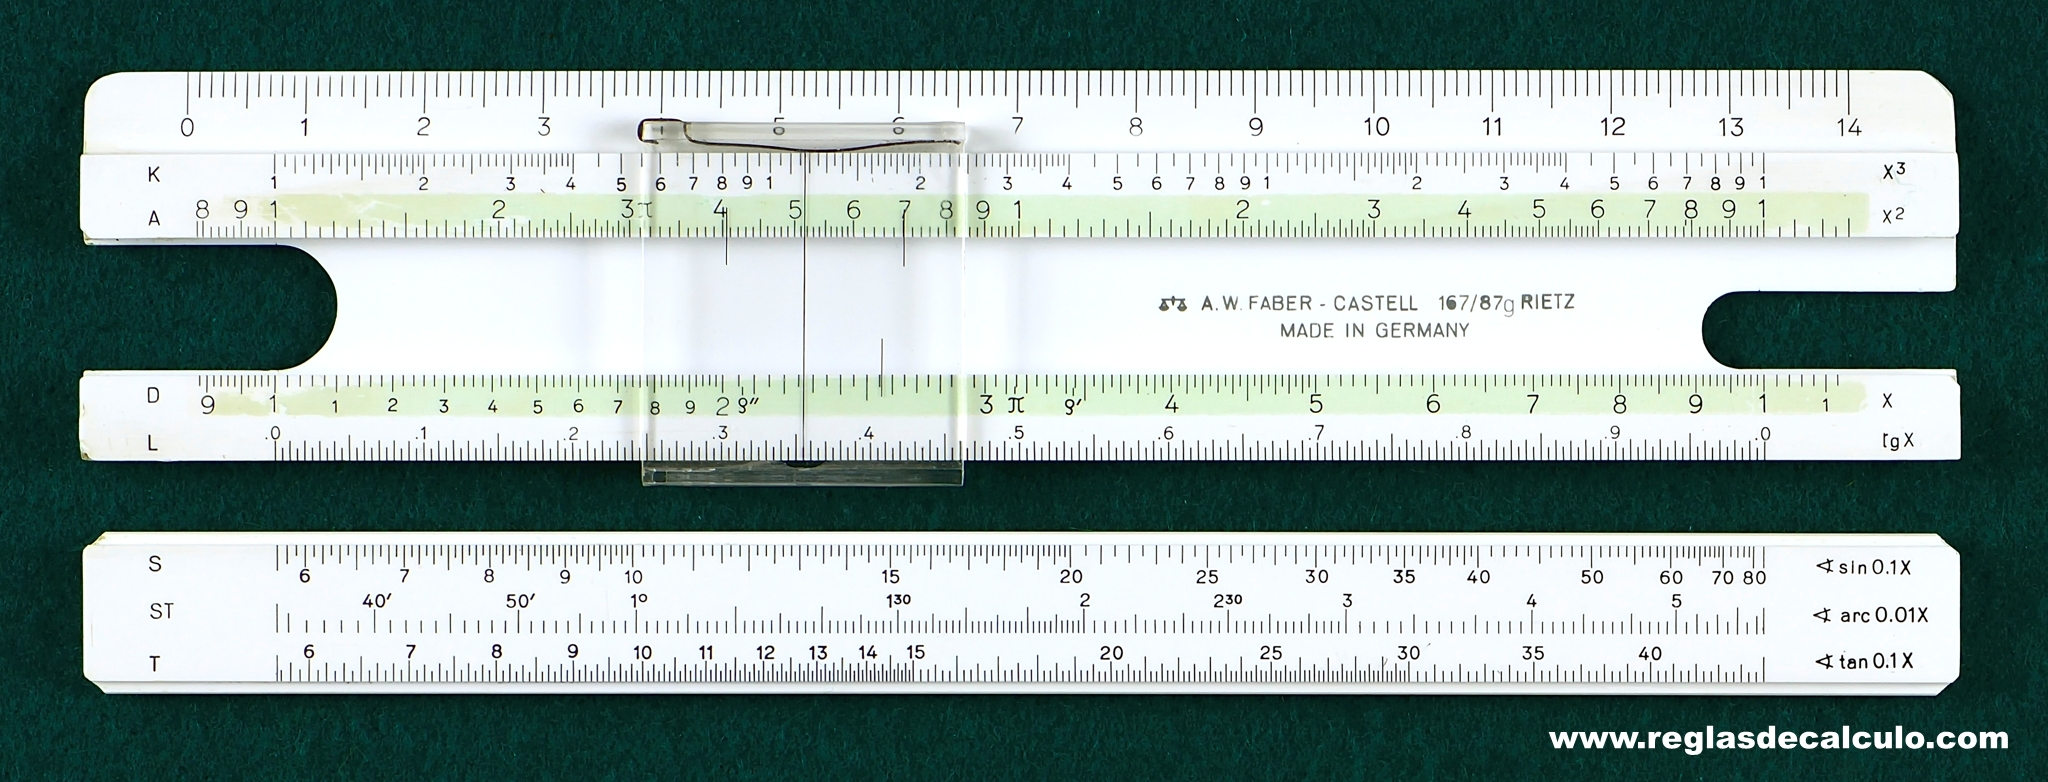 Faber Castell 167/87g Regla de Calculo Slide rule